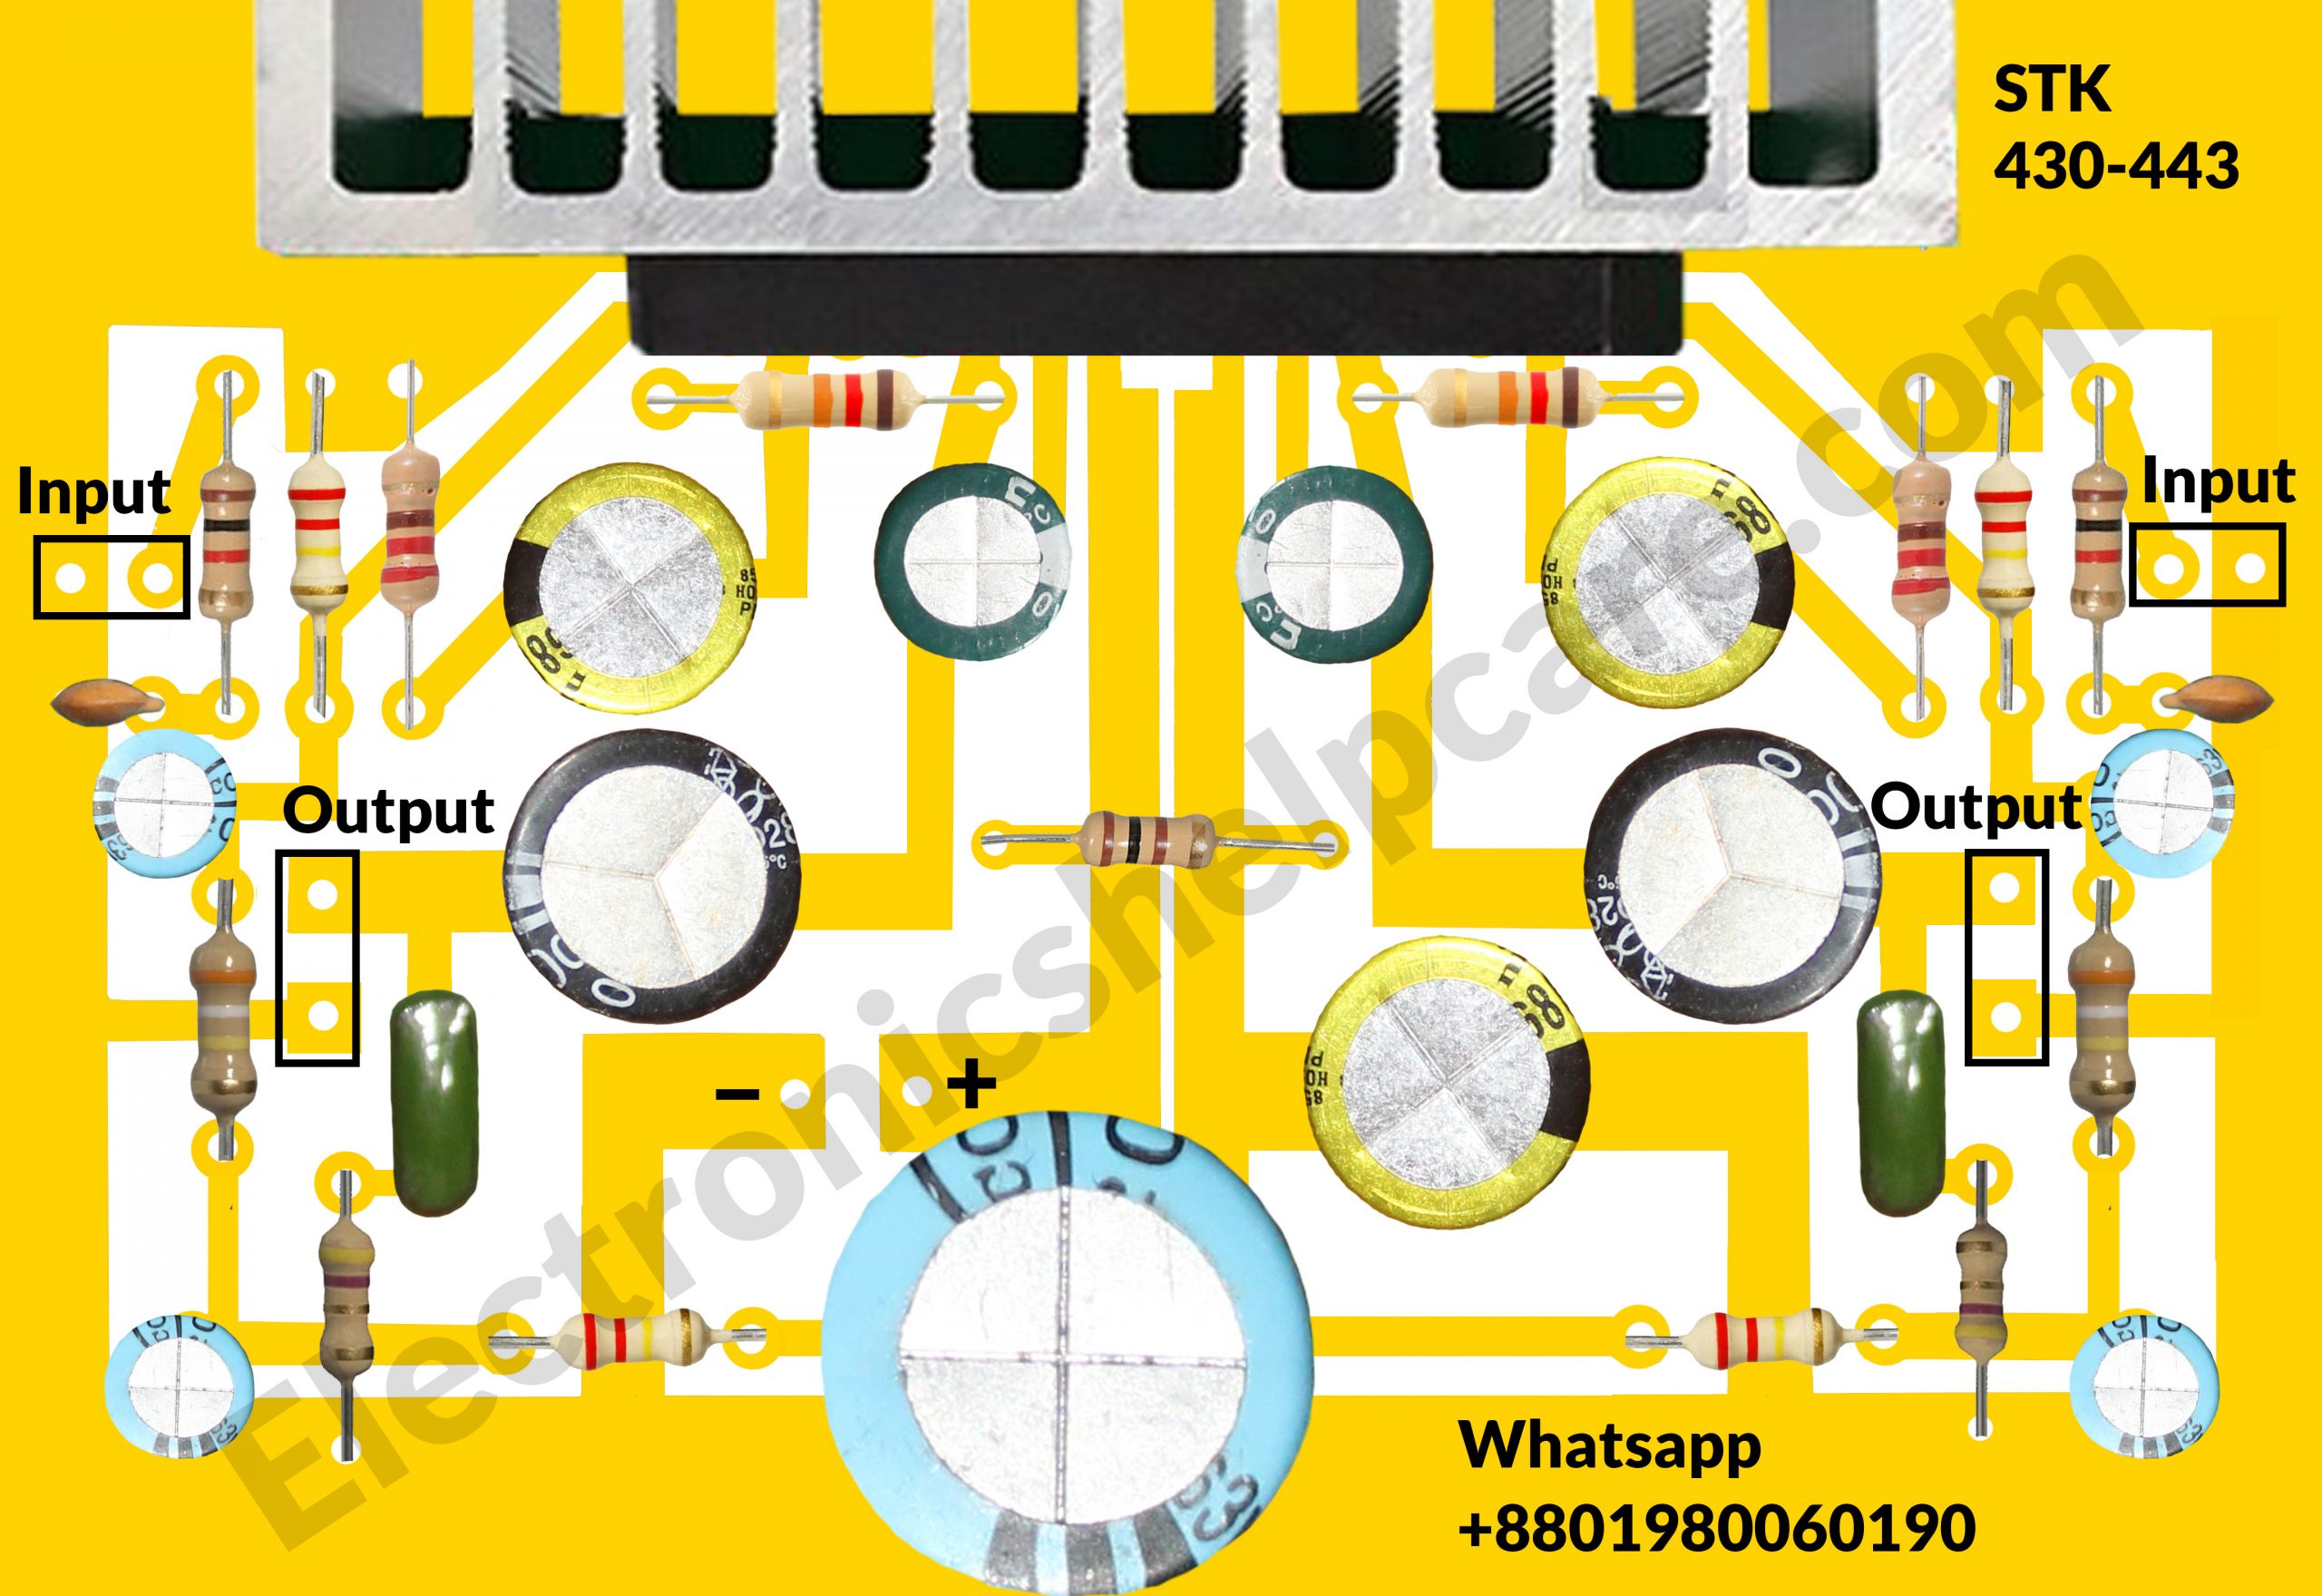 STK430-443 circuit diagram